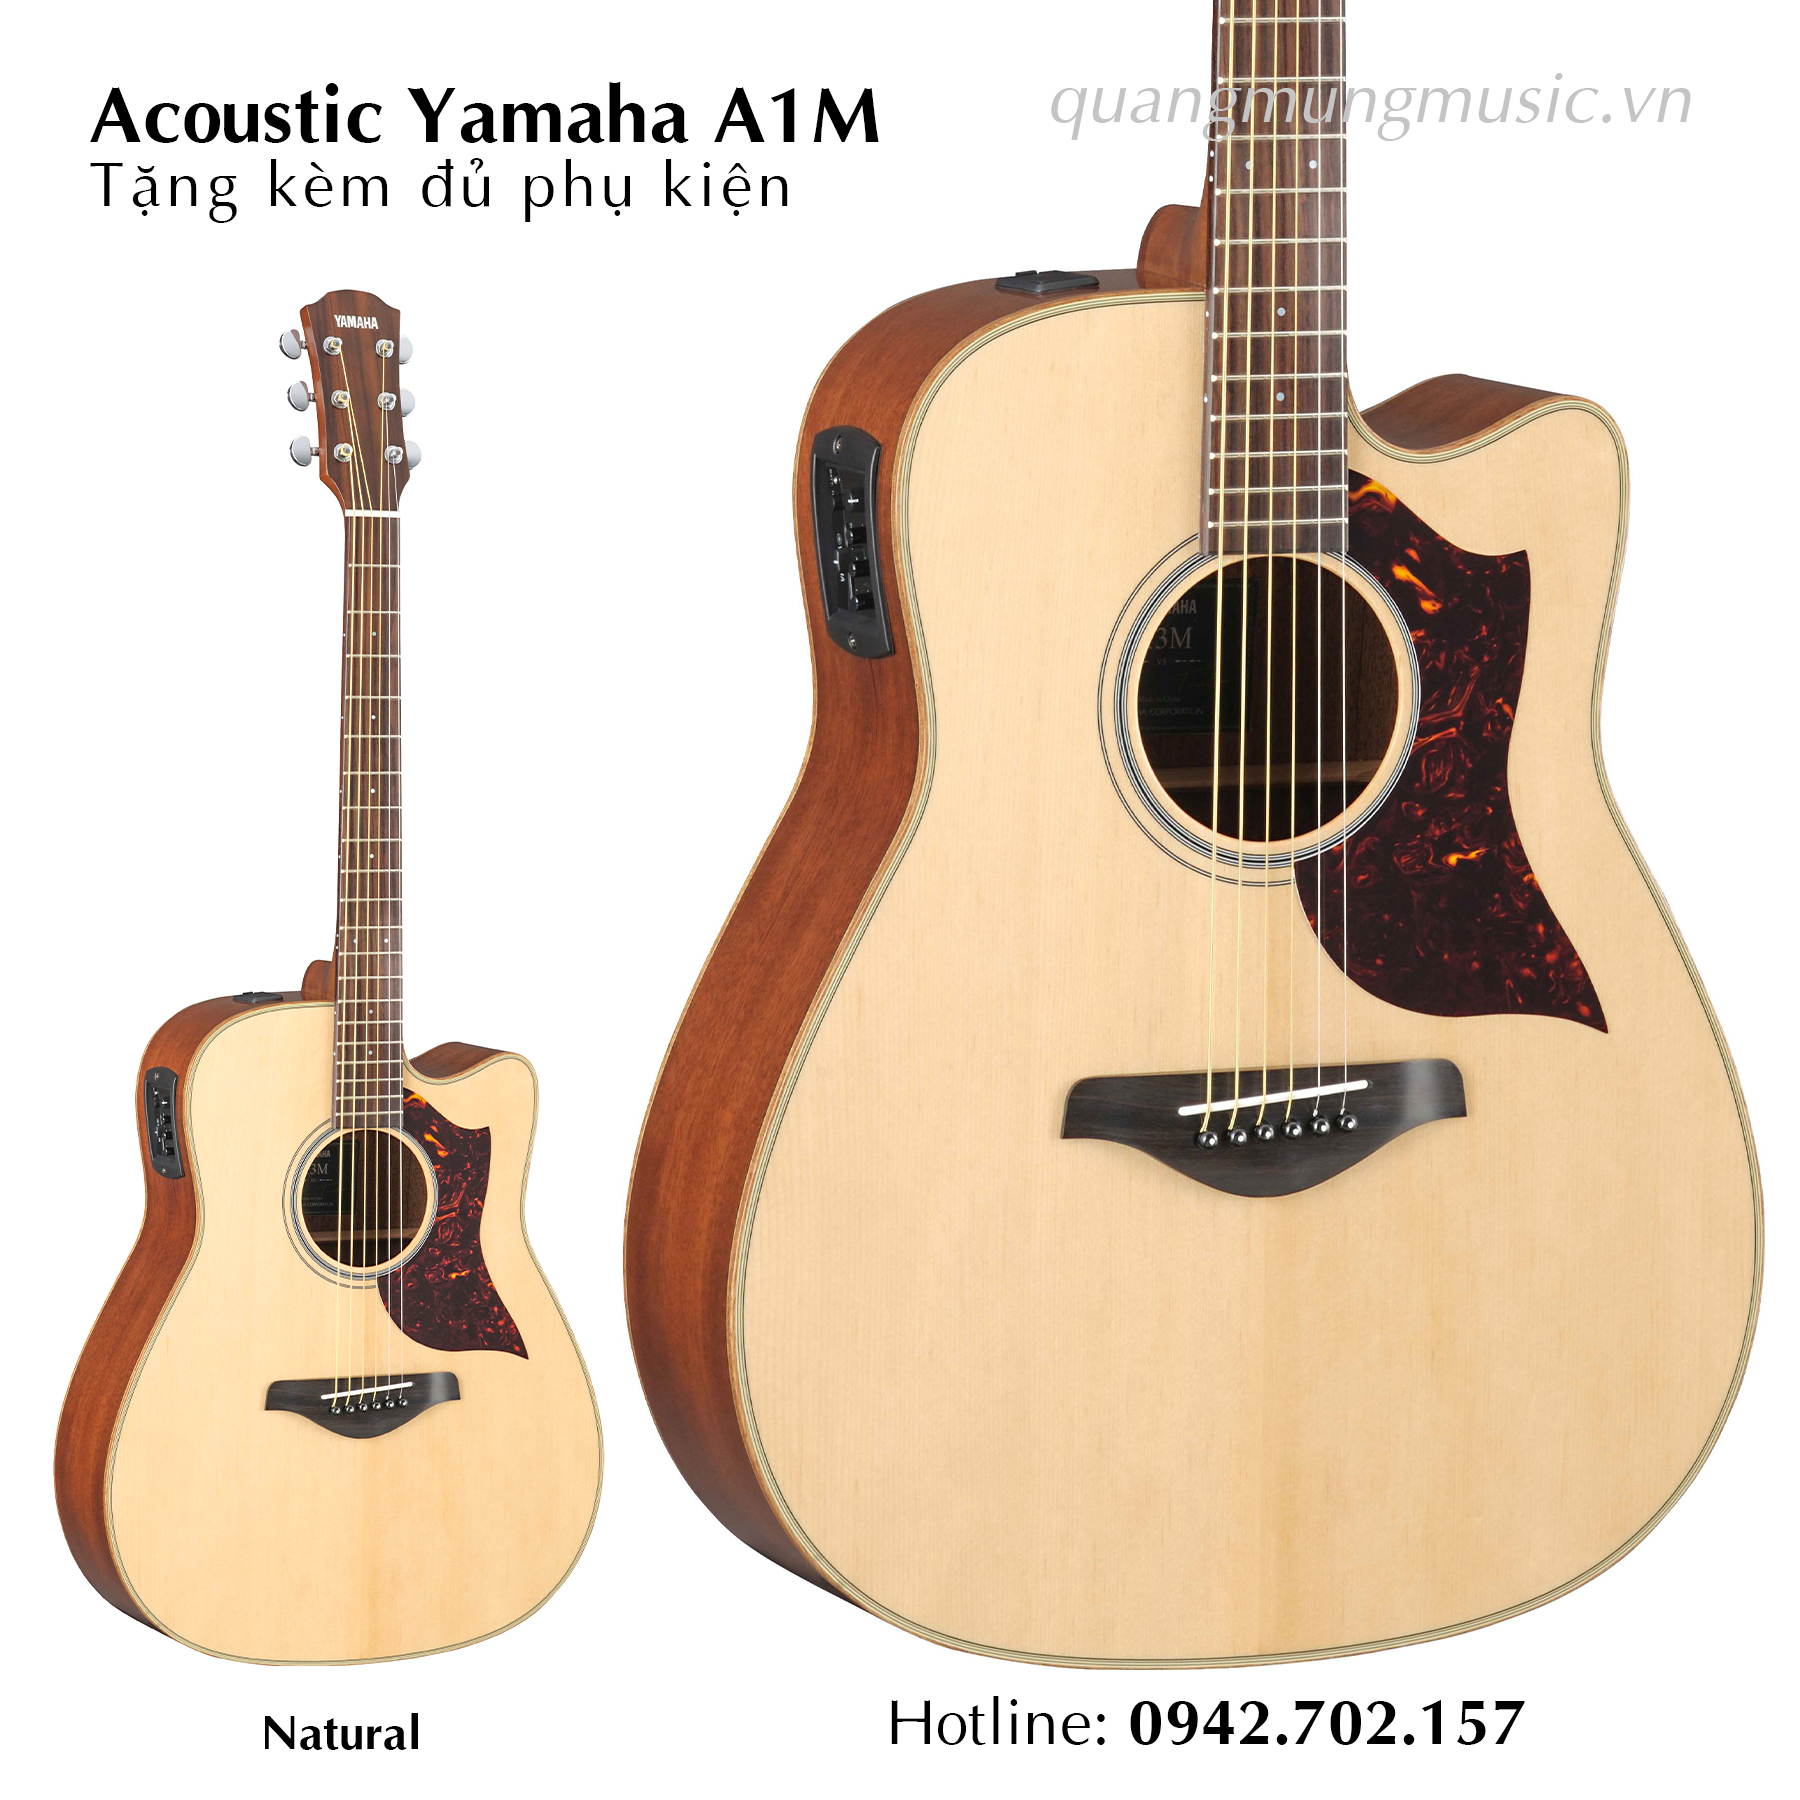 Acoustic Yamaha A1M-Natural